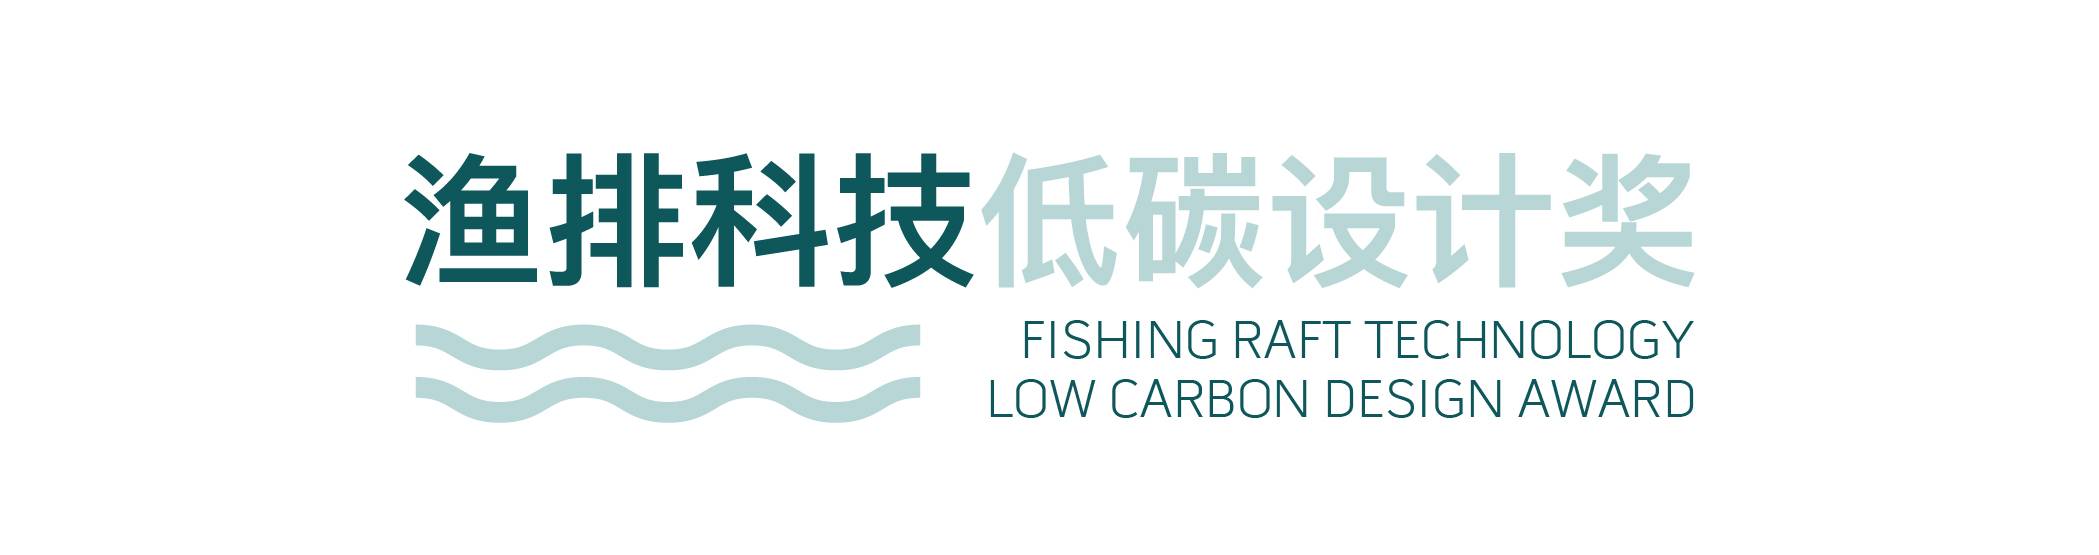 渔排科技低碳设计奖